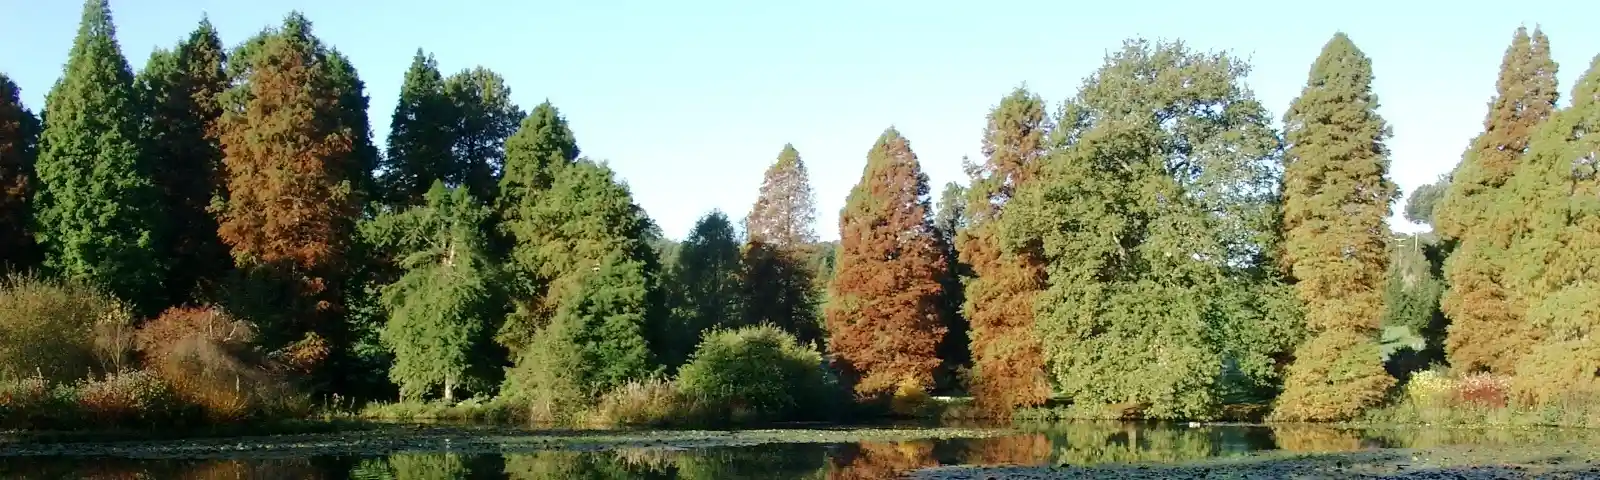 Autumn 06 0018.JPG